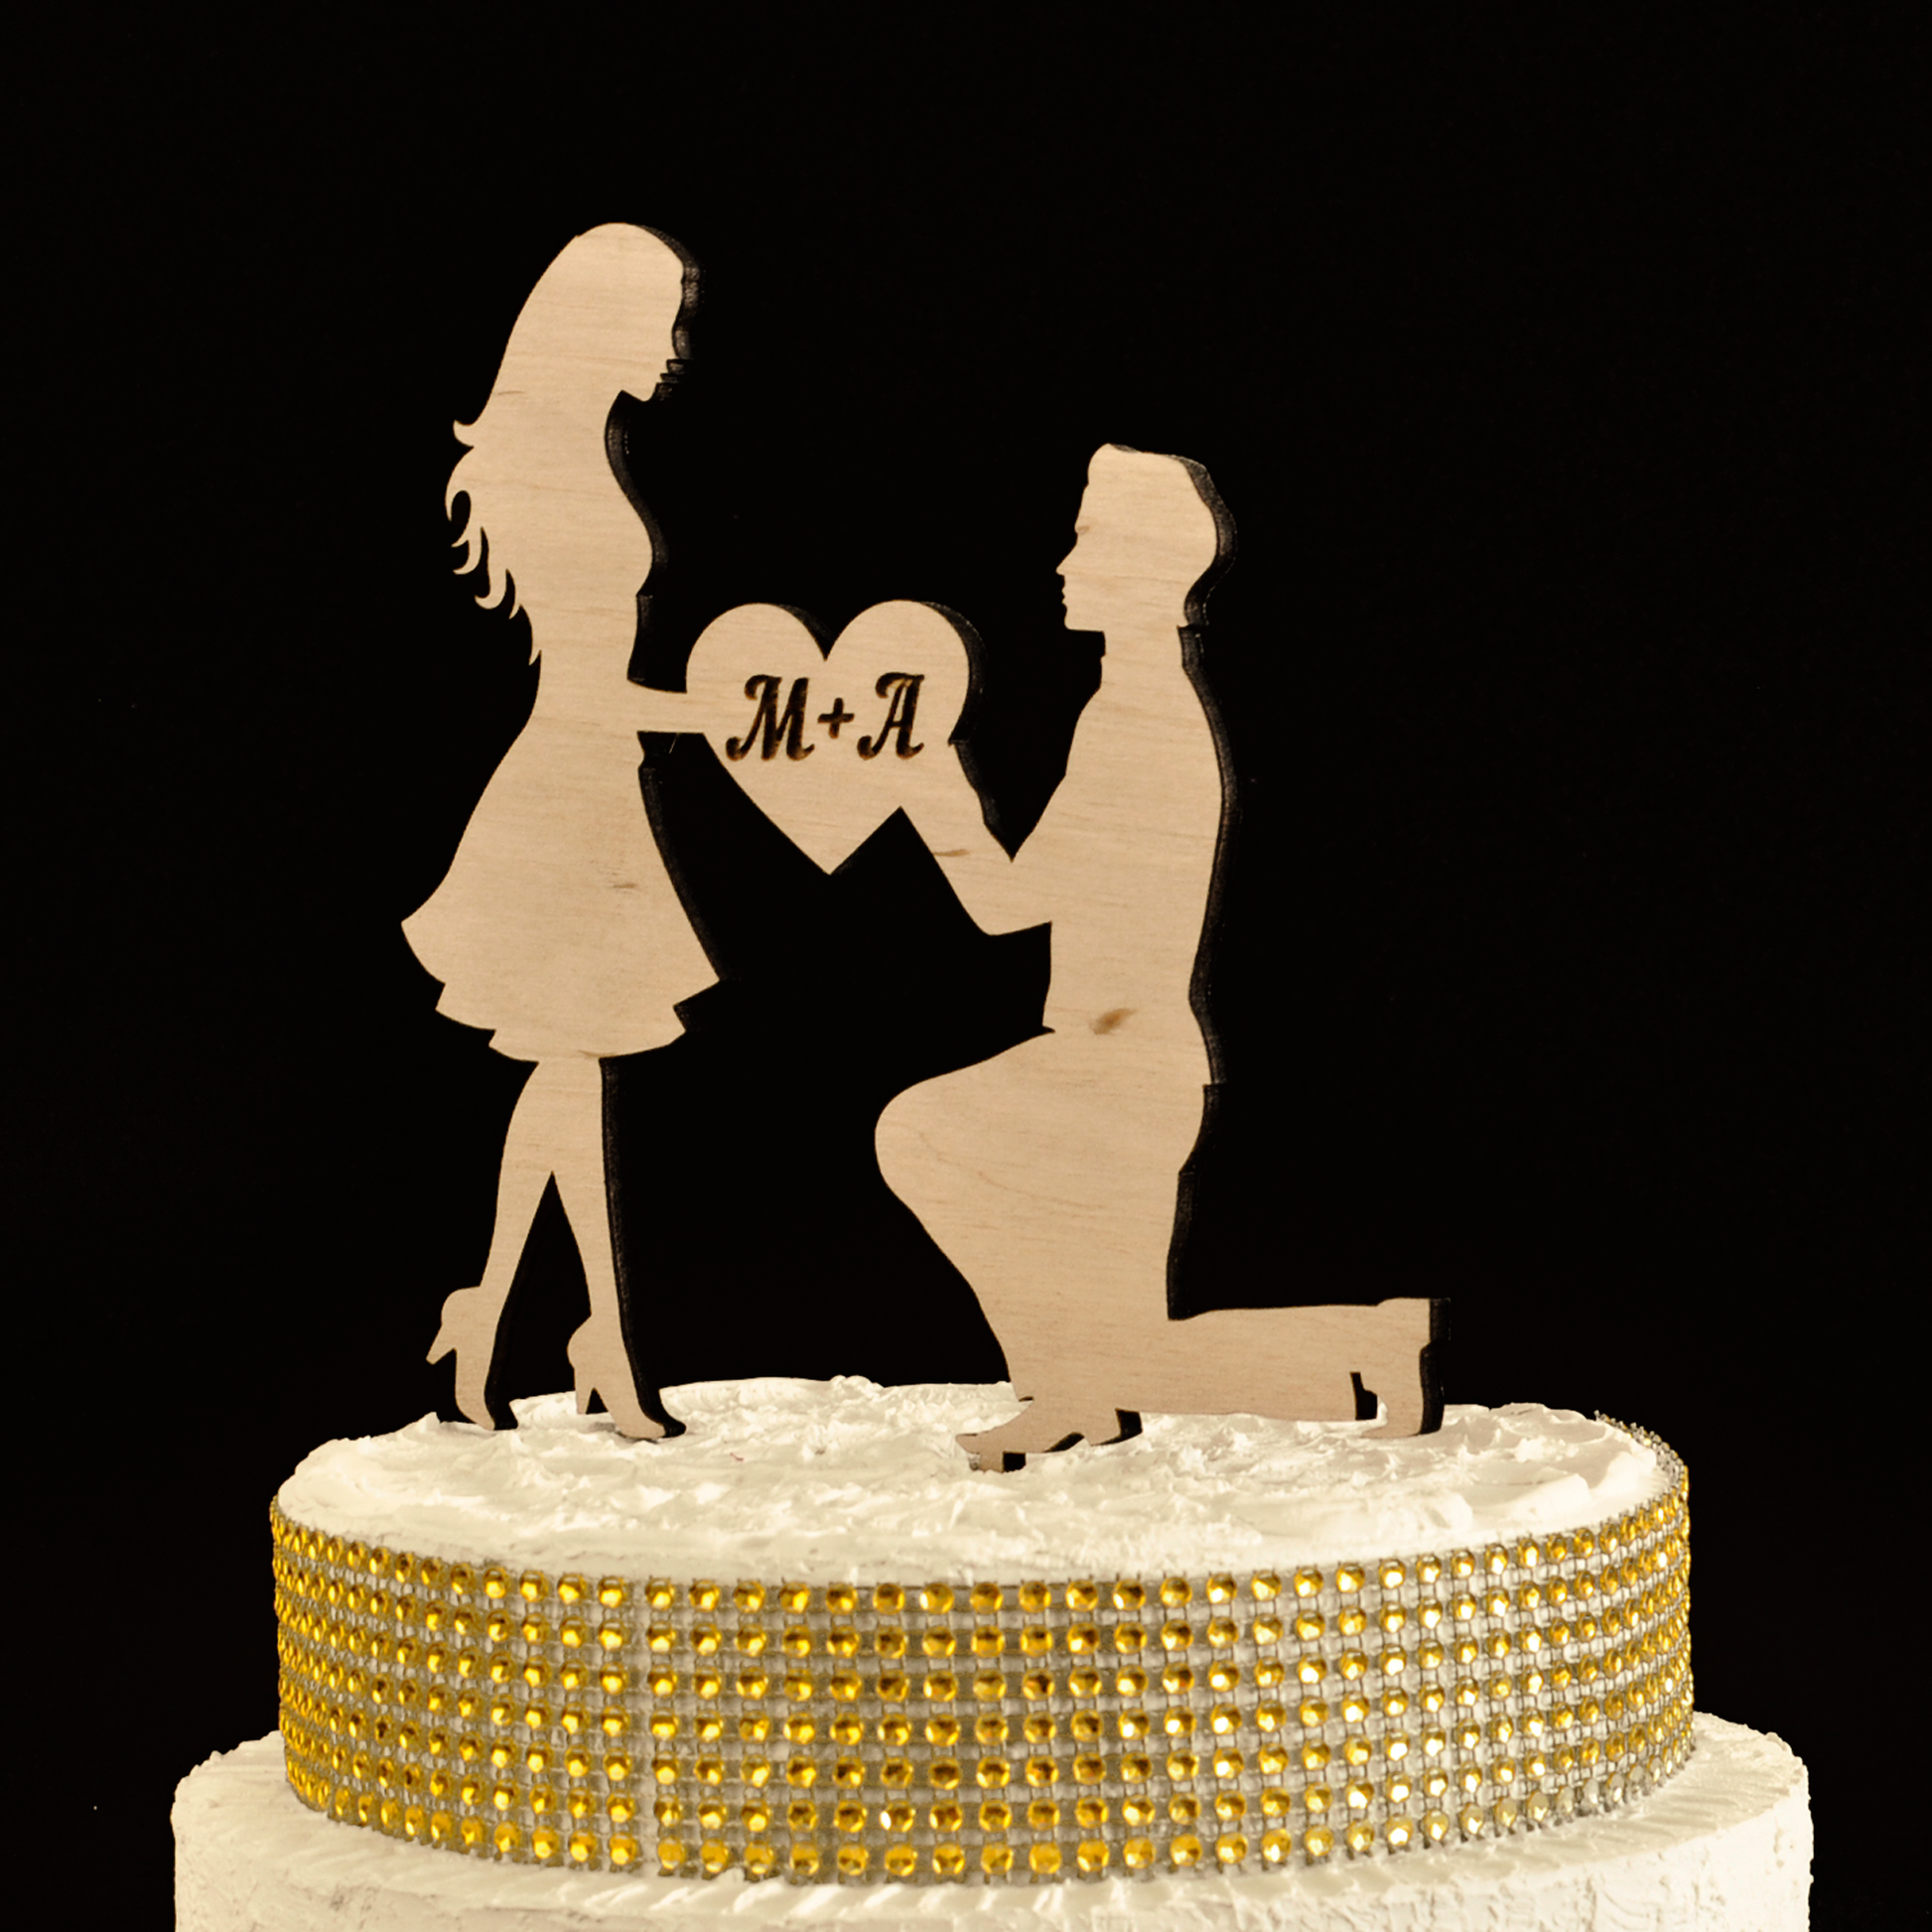 фігурки на торт, топер на торт, топери на торт, топери для торта, фігурки для торта, золоті фігурки на торт, срібний топер, золотий топер на весілля, купити фігурки на торт, замовити фігурки на торт,